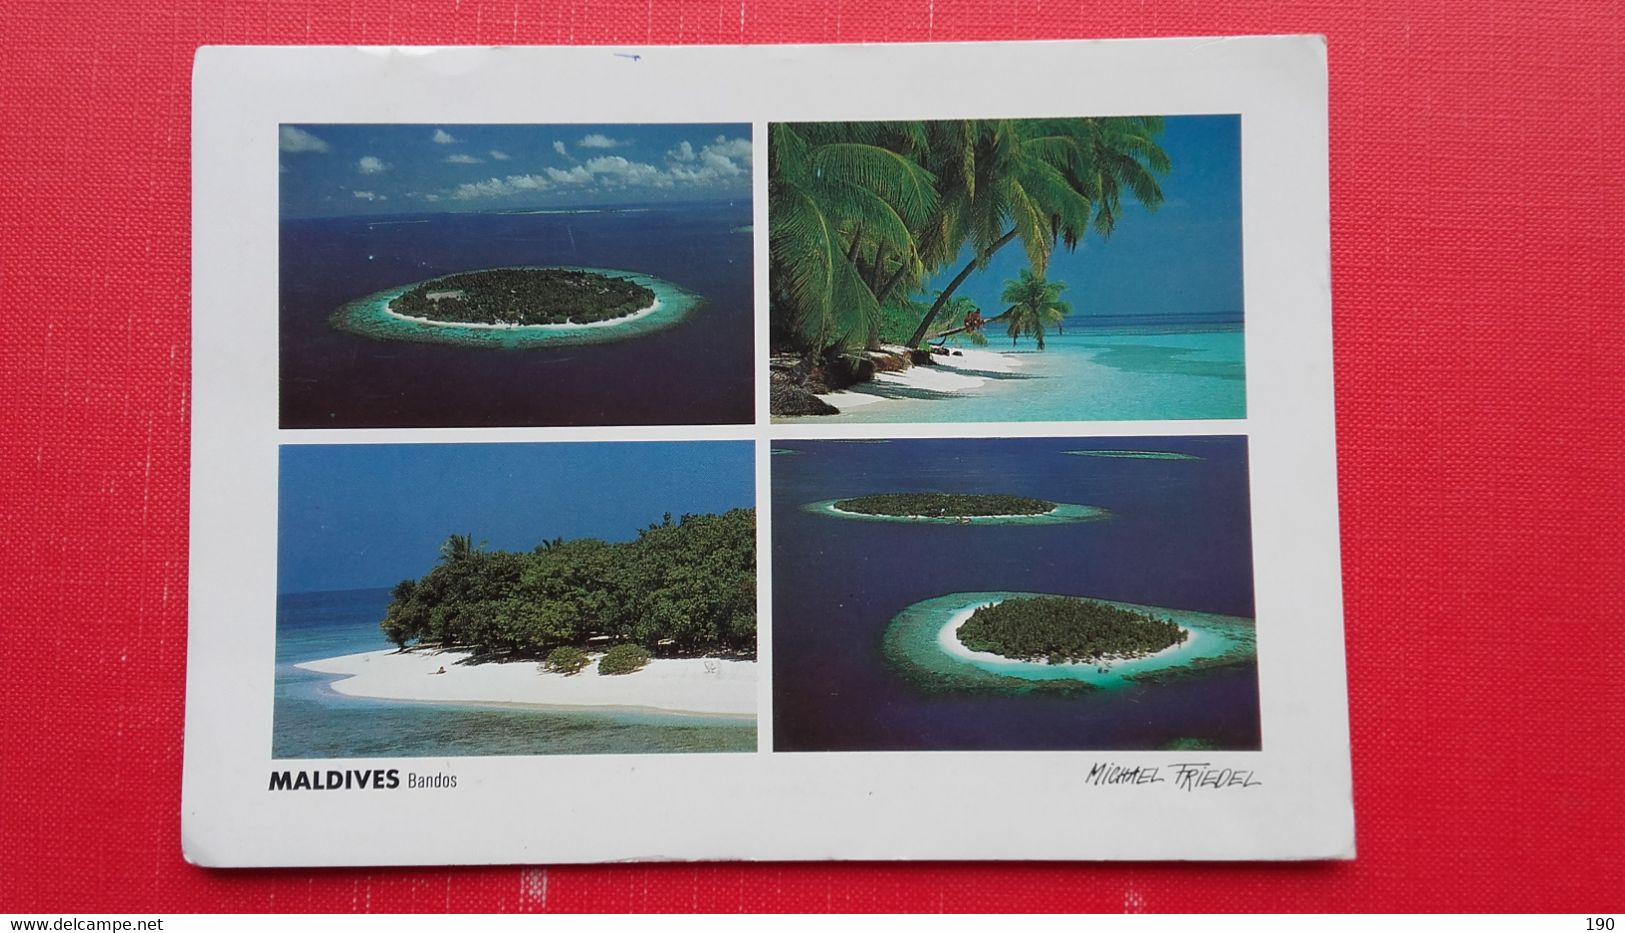 Male Atoll.Bandos - Maldives